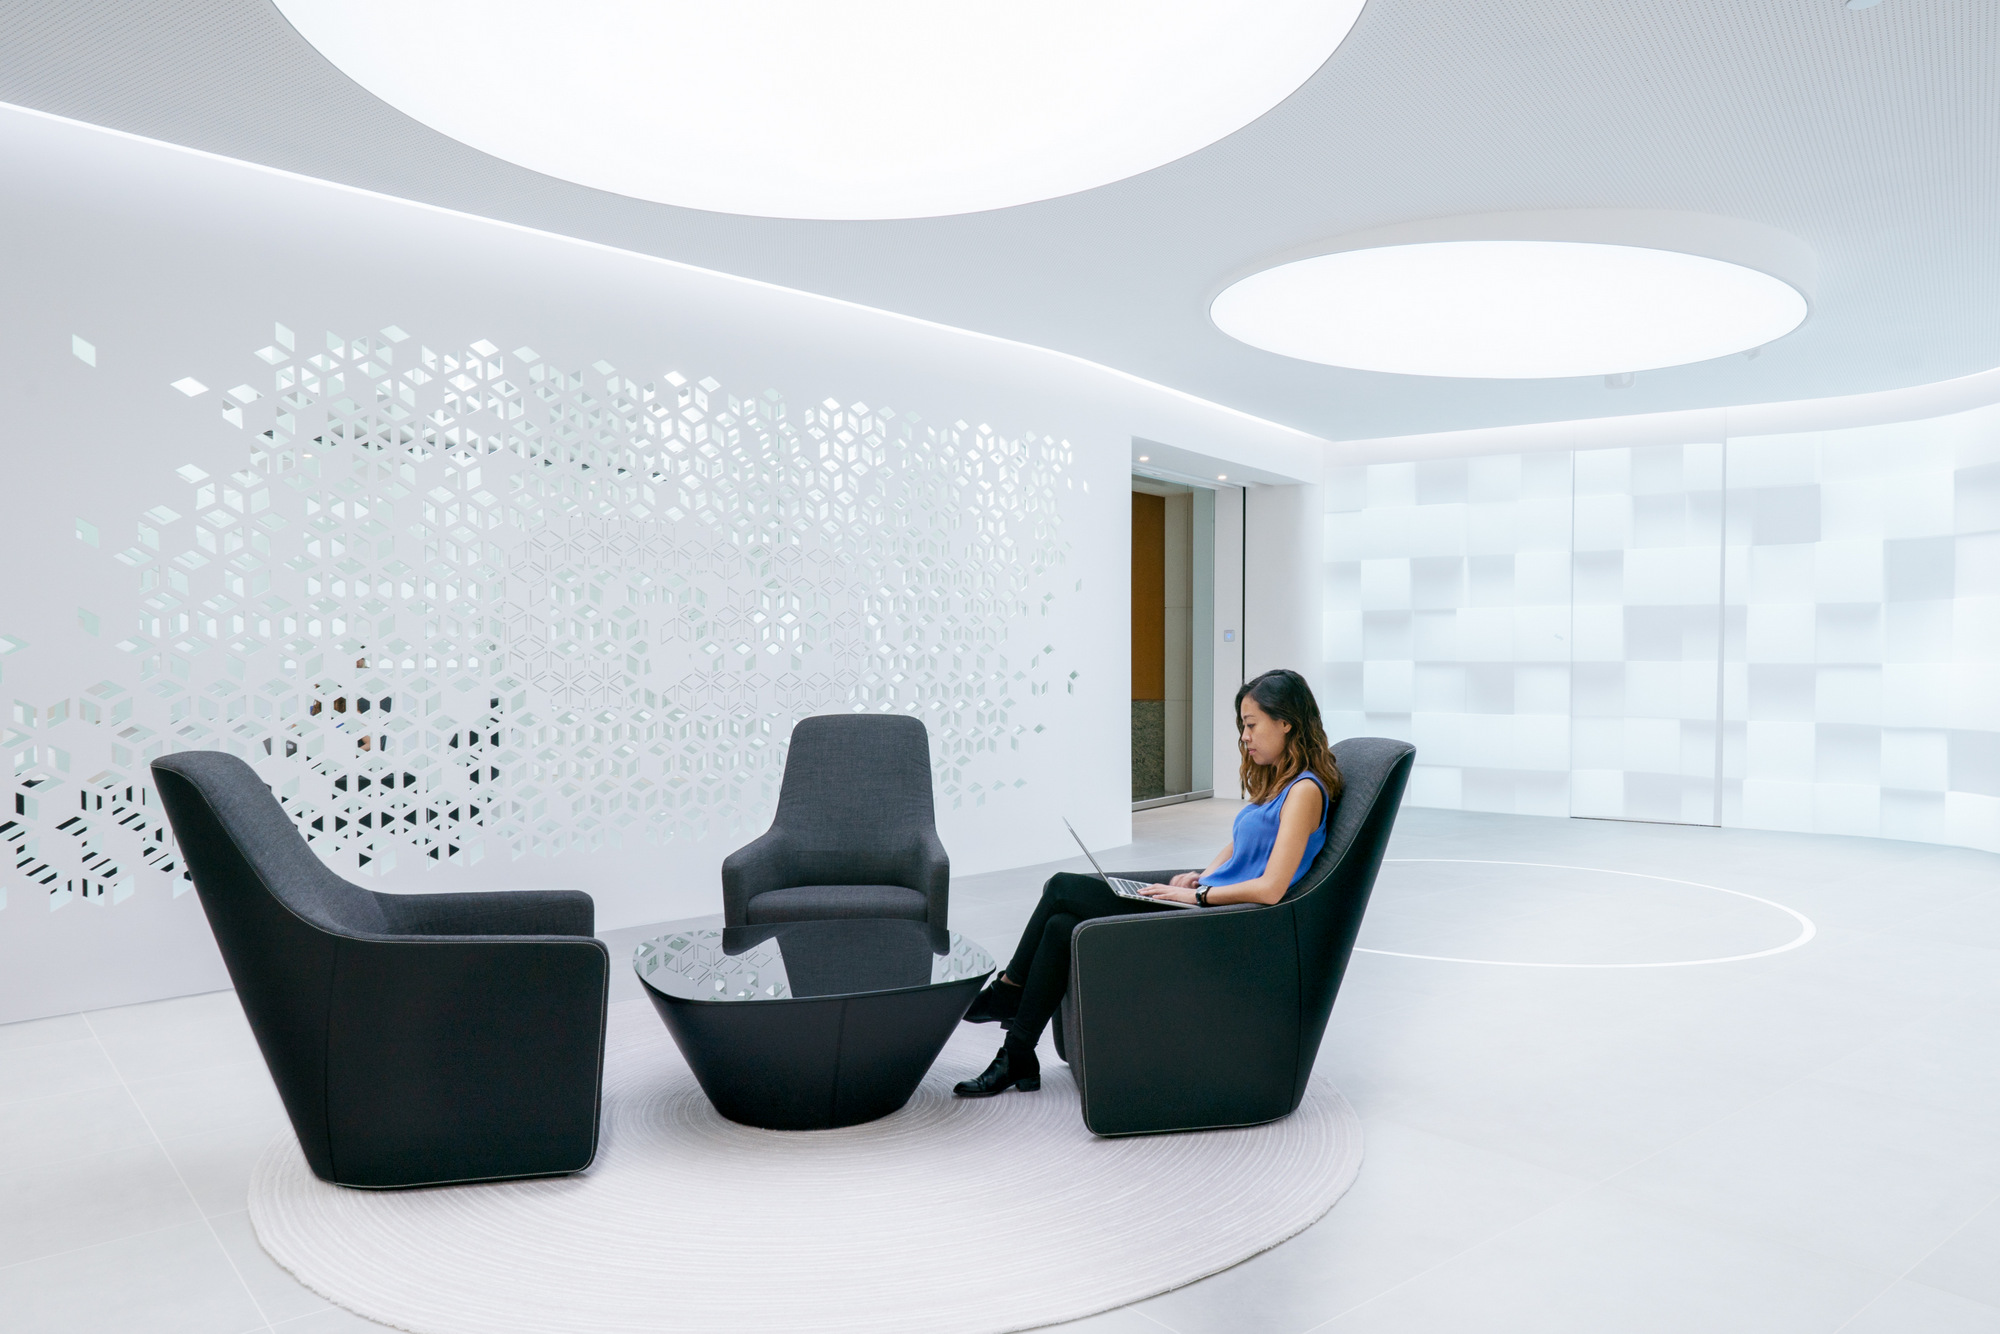 图片[3]|Diginex香港办事处|ART-Arrakis | 建筑室内设计的创新与灵感